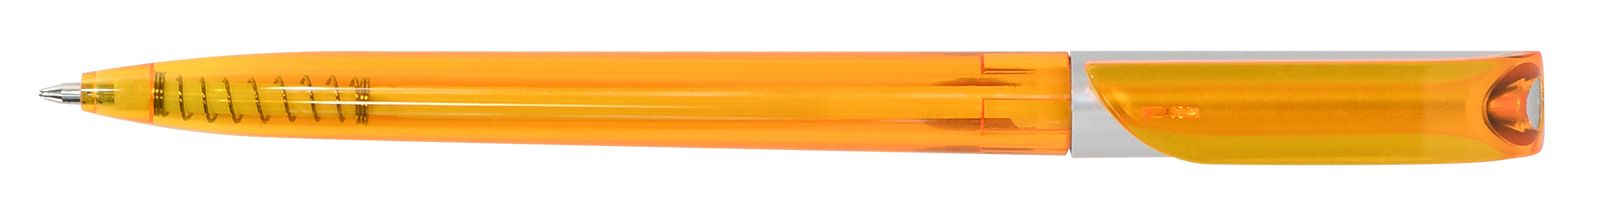 Ручка для логотипа шариковая автоматическая одноразовая INFORMAT КАРОЛИНА, 0,7 мм, синяя,  оранжевый тонированный корпус